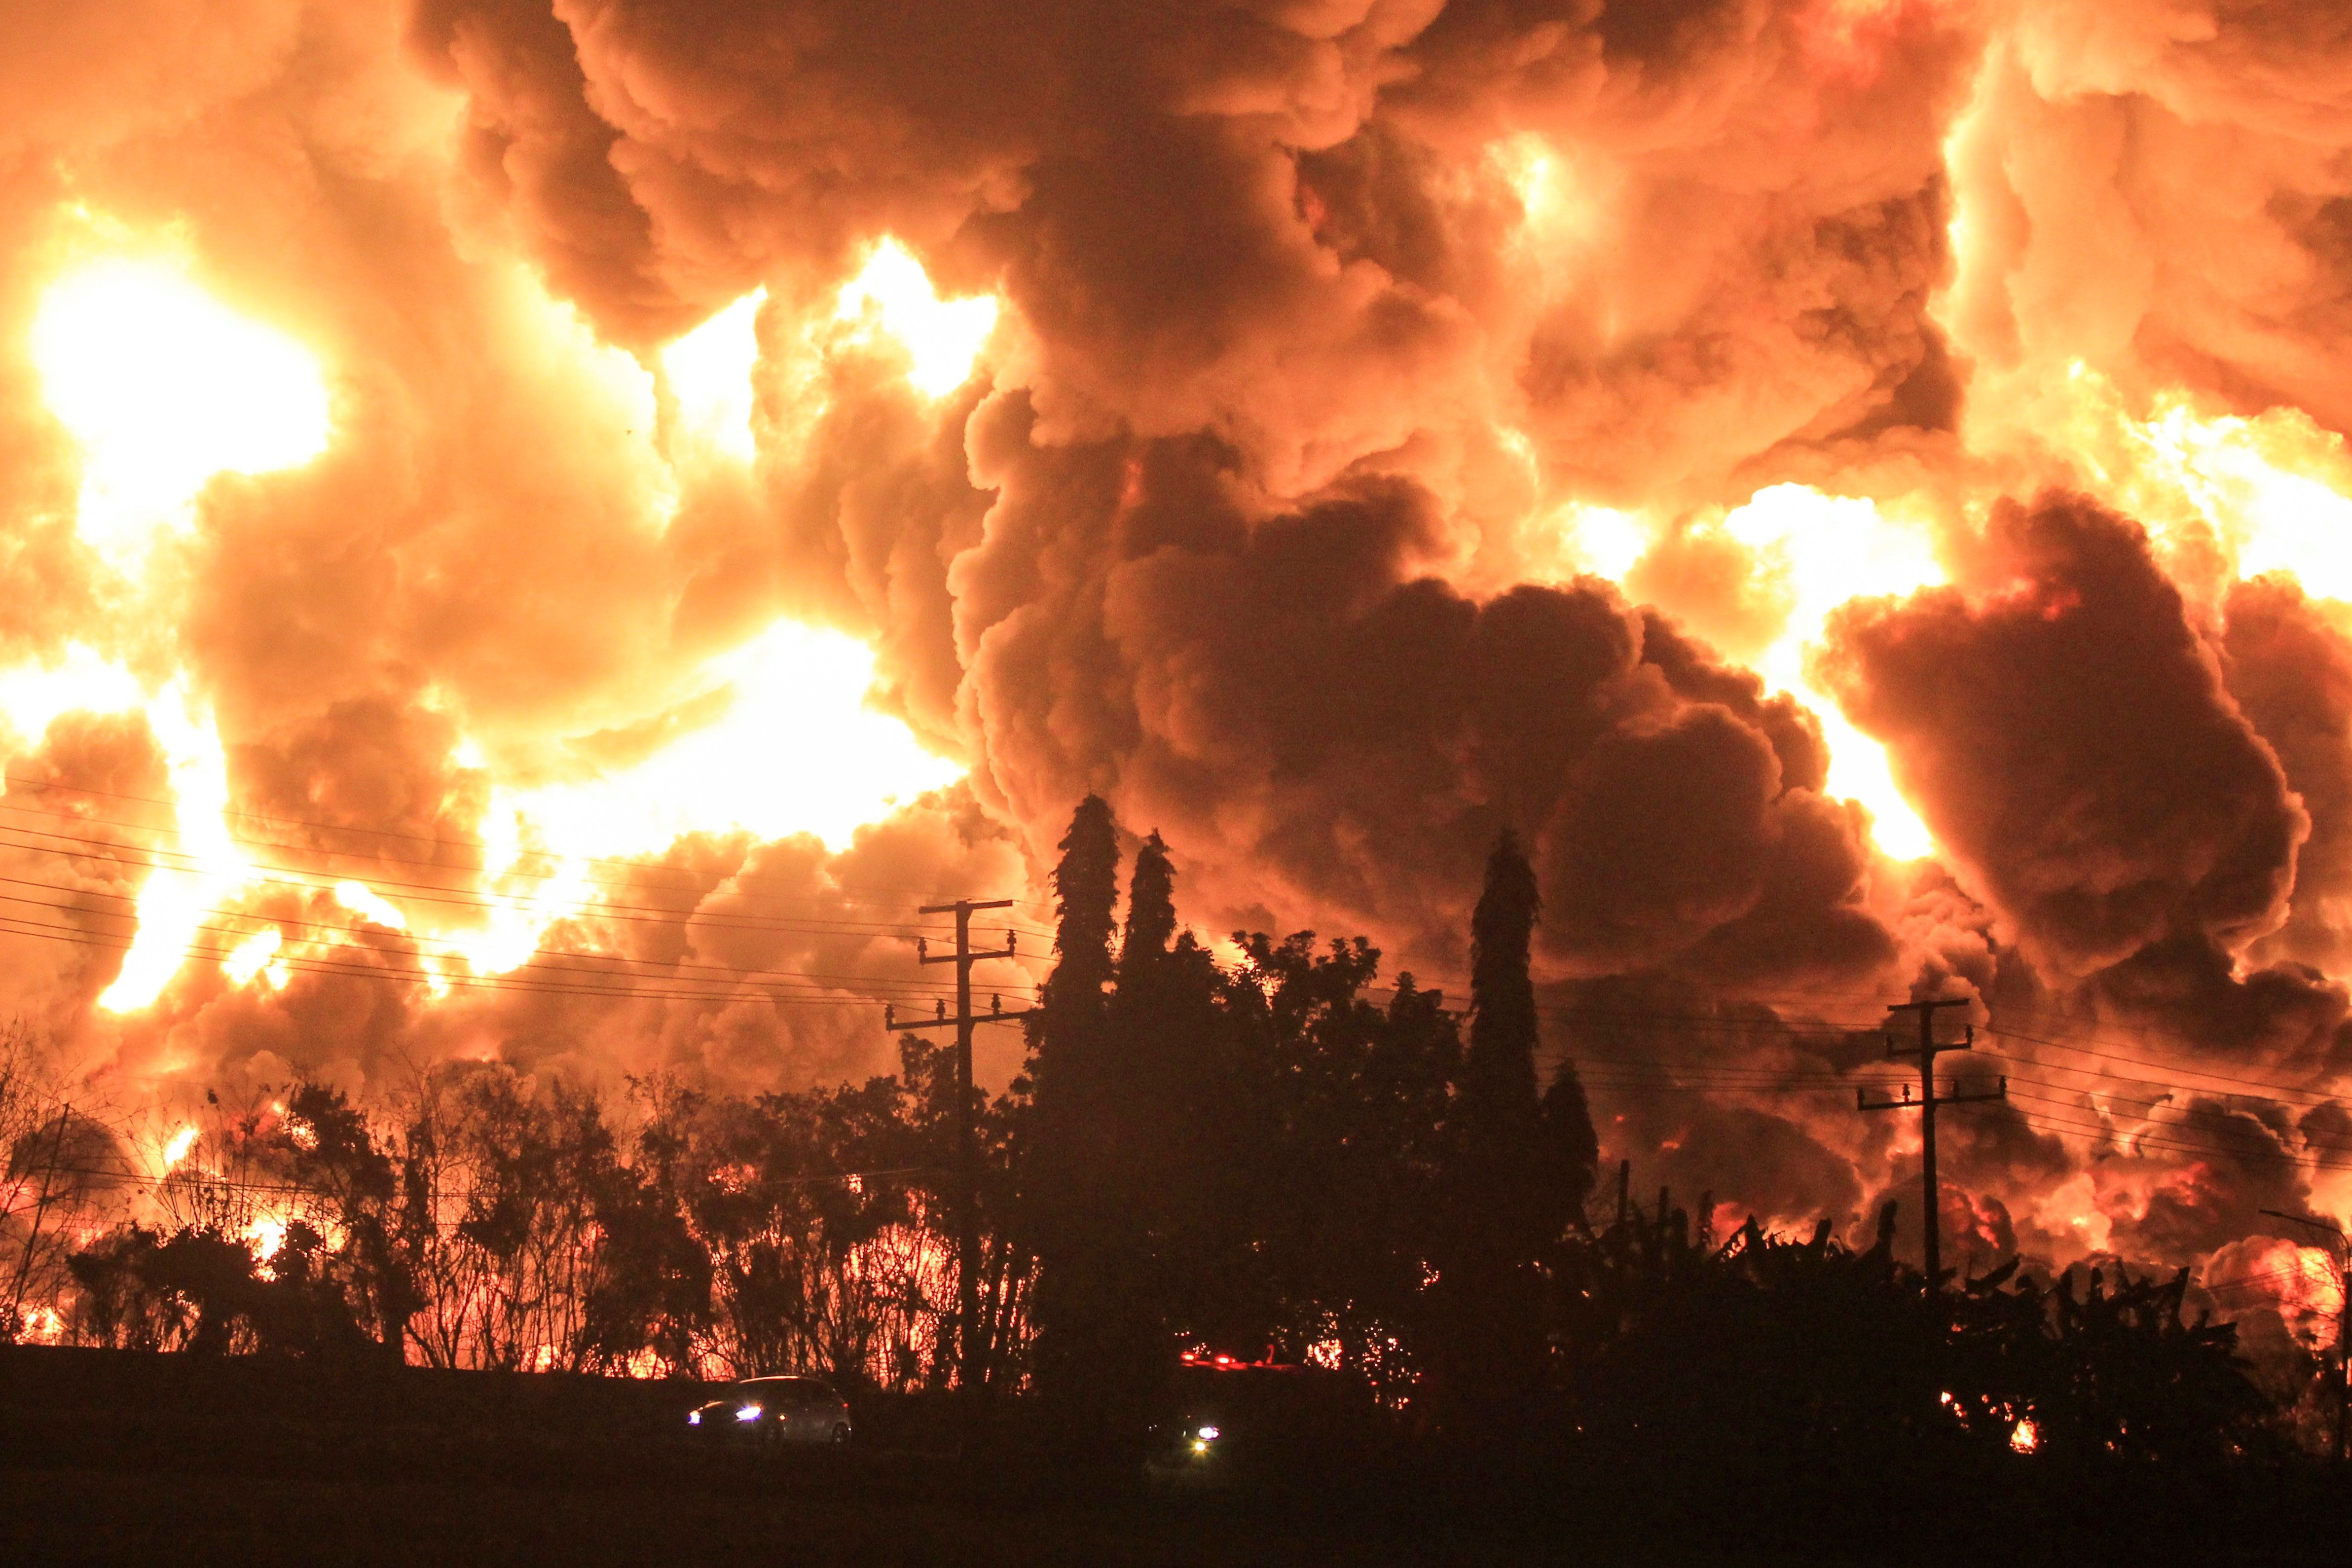  Vista de fuego declarado en una refinería de Balongan en la localidad de Indramayu, Indonesia este lunes donde al menos han muerto cinco personas.